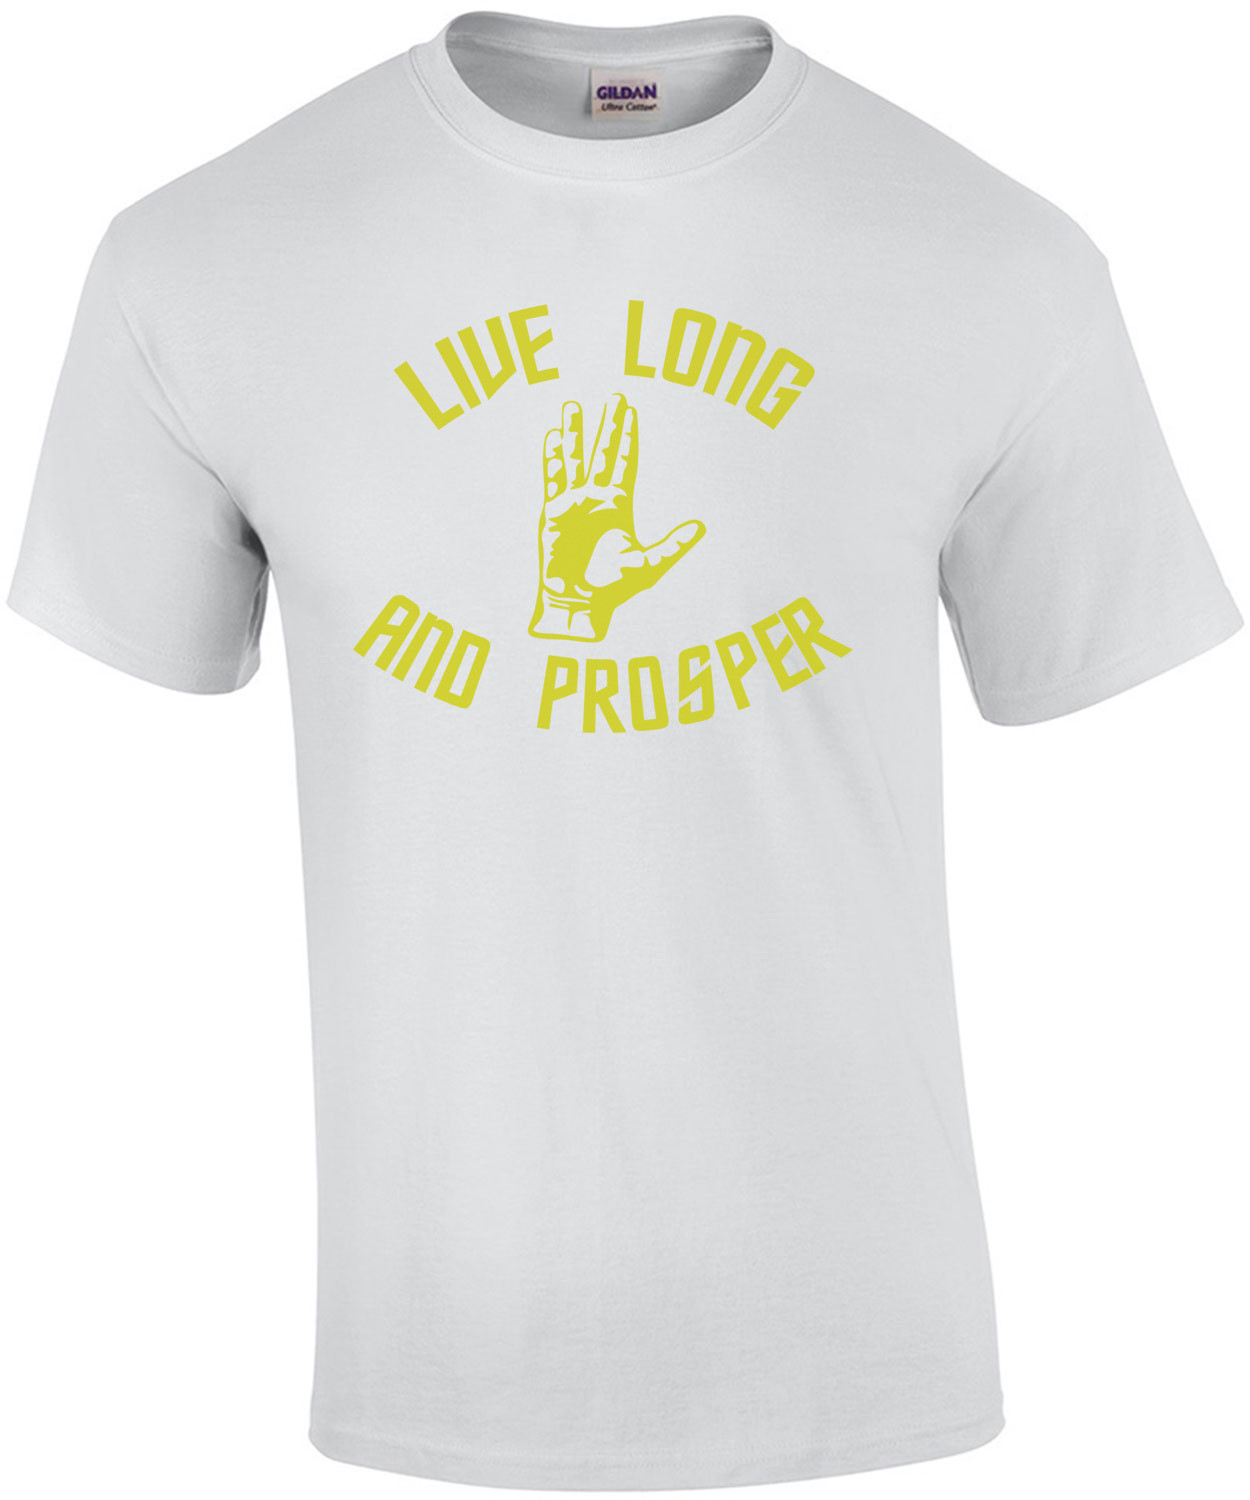 Live Long and Prosper - Star Trek